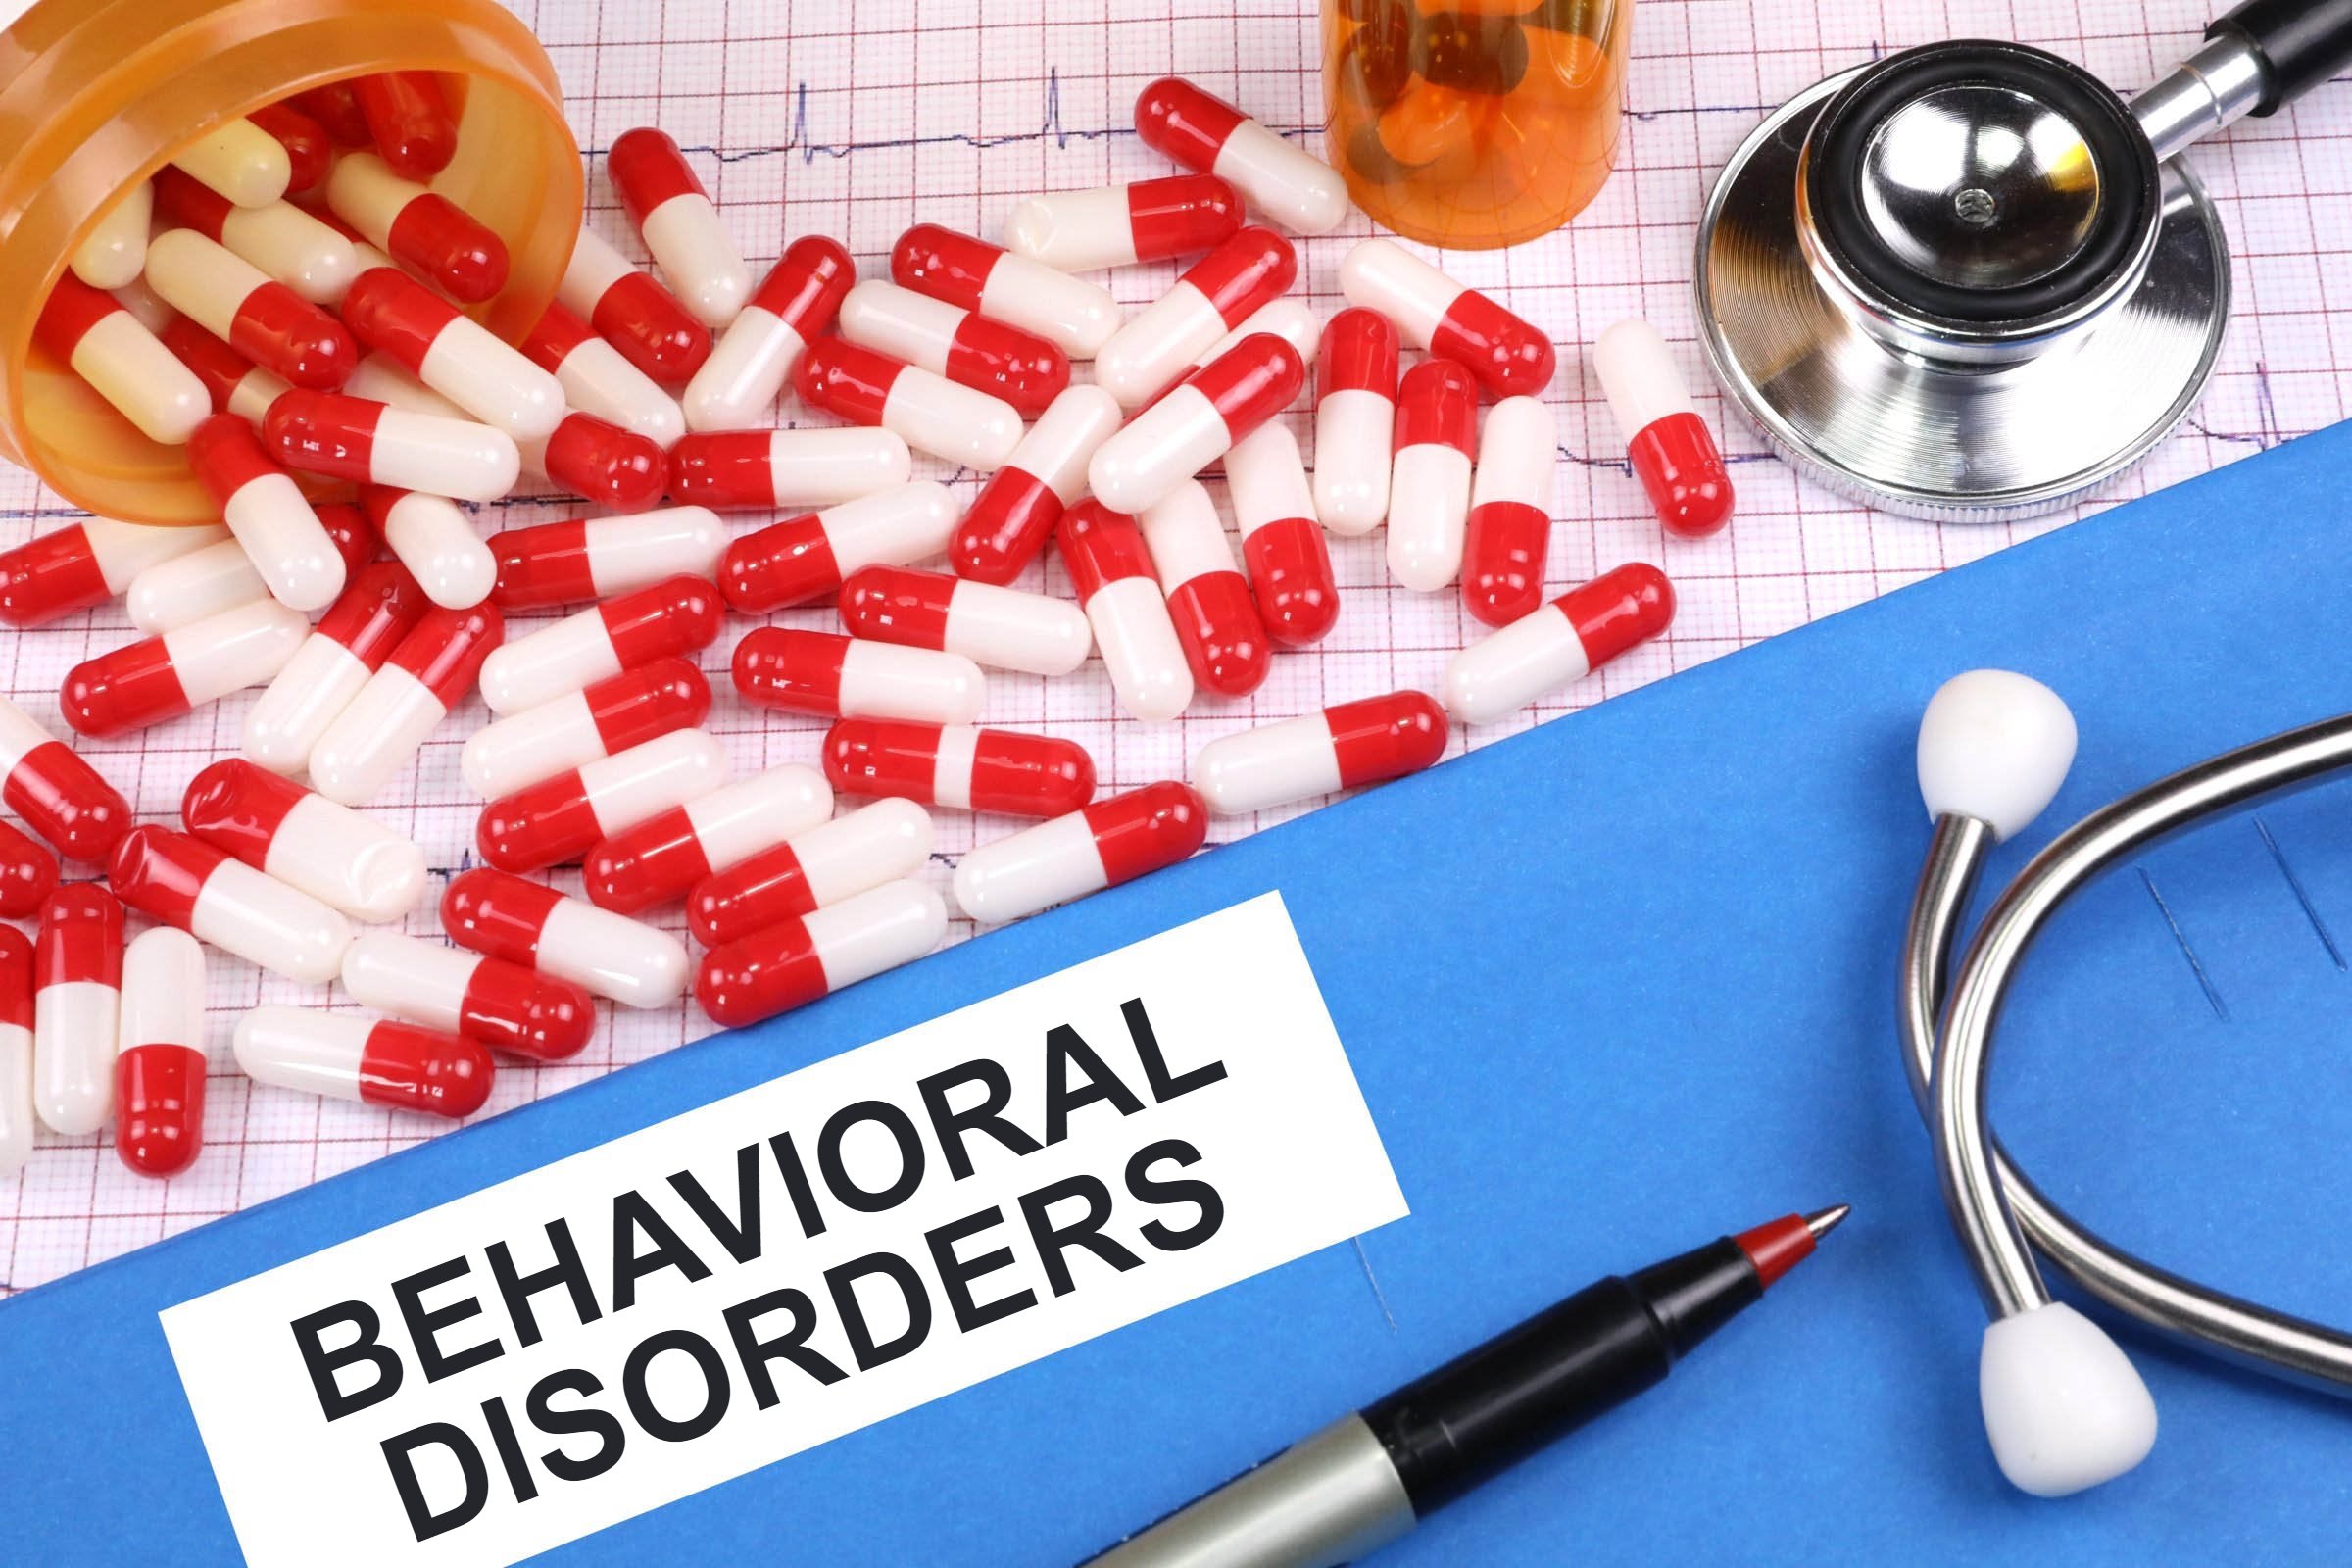 behavioral disorders